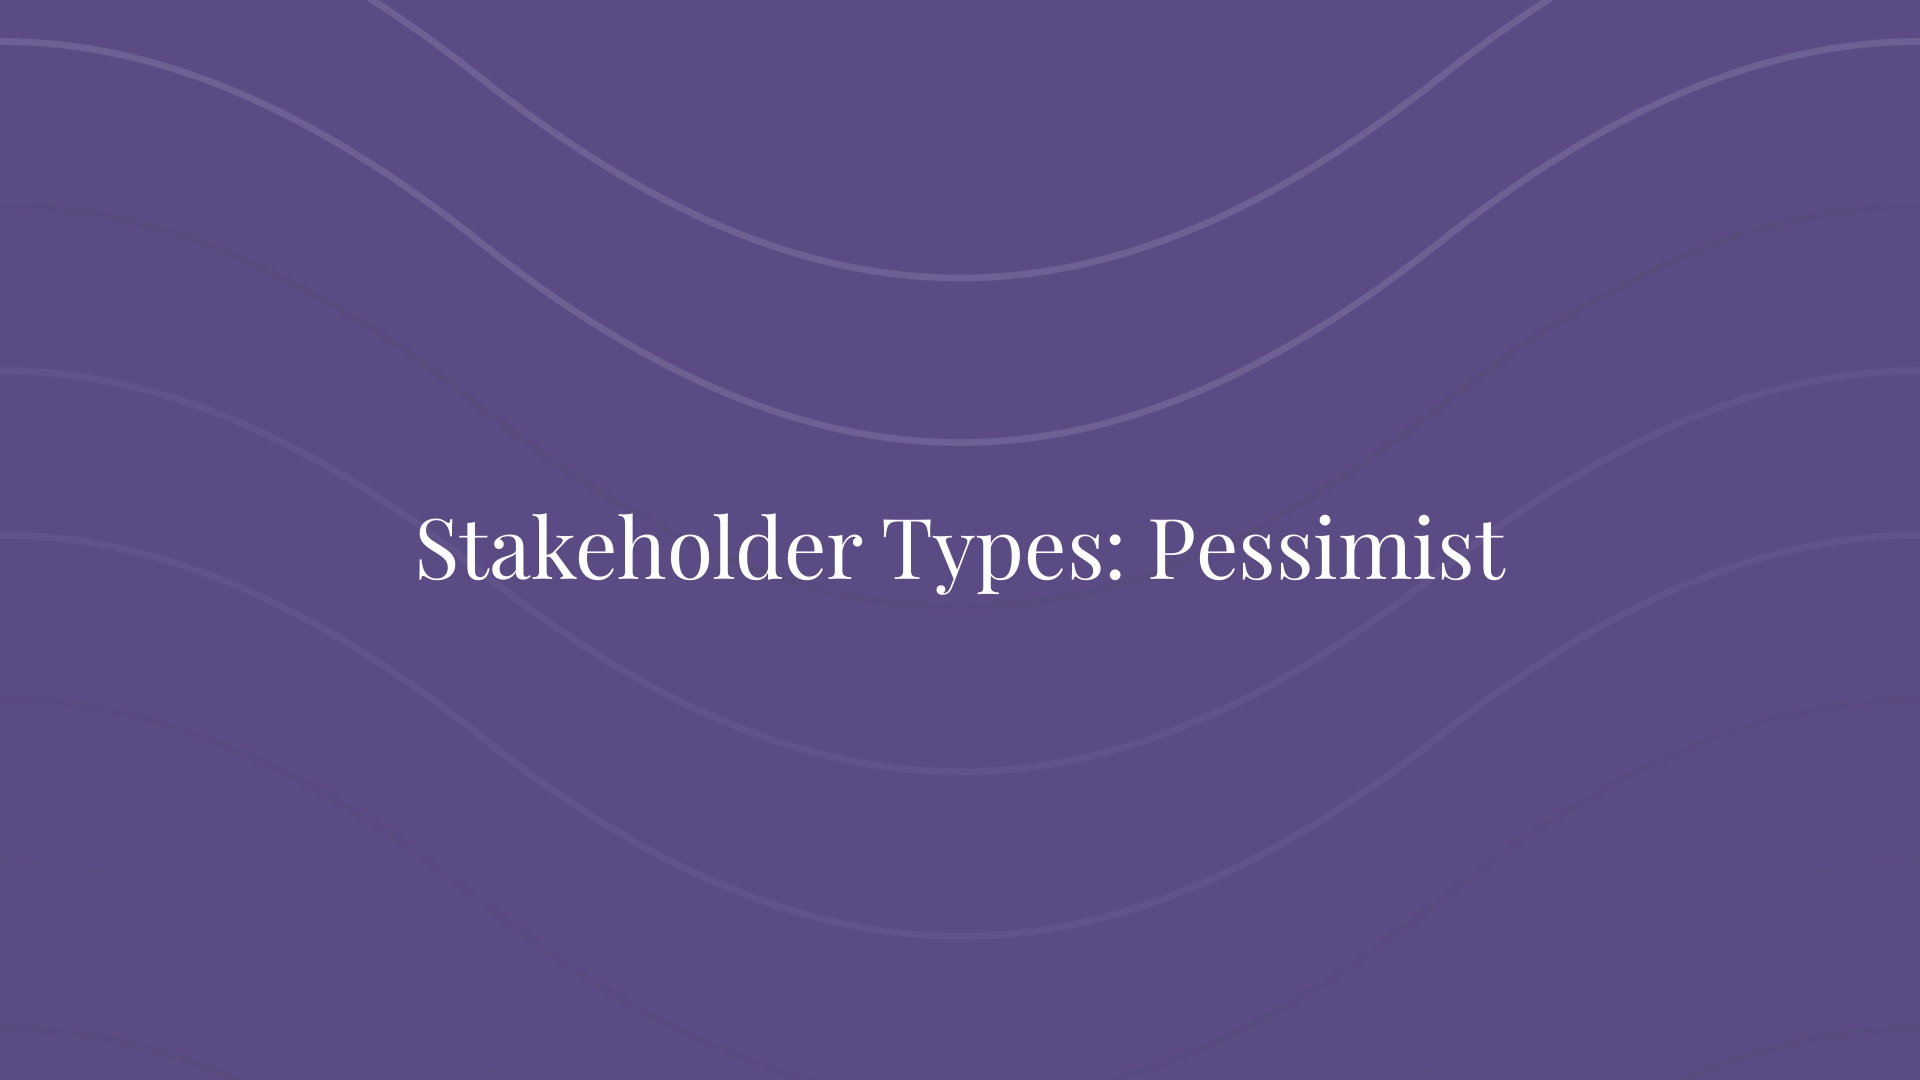 Stakeholder Types: Pessimist